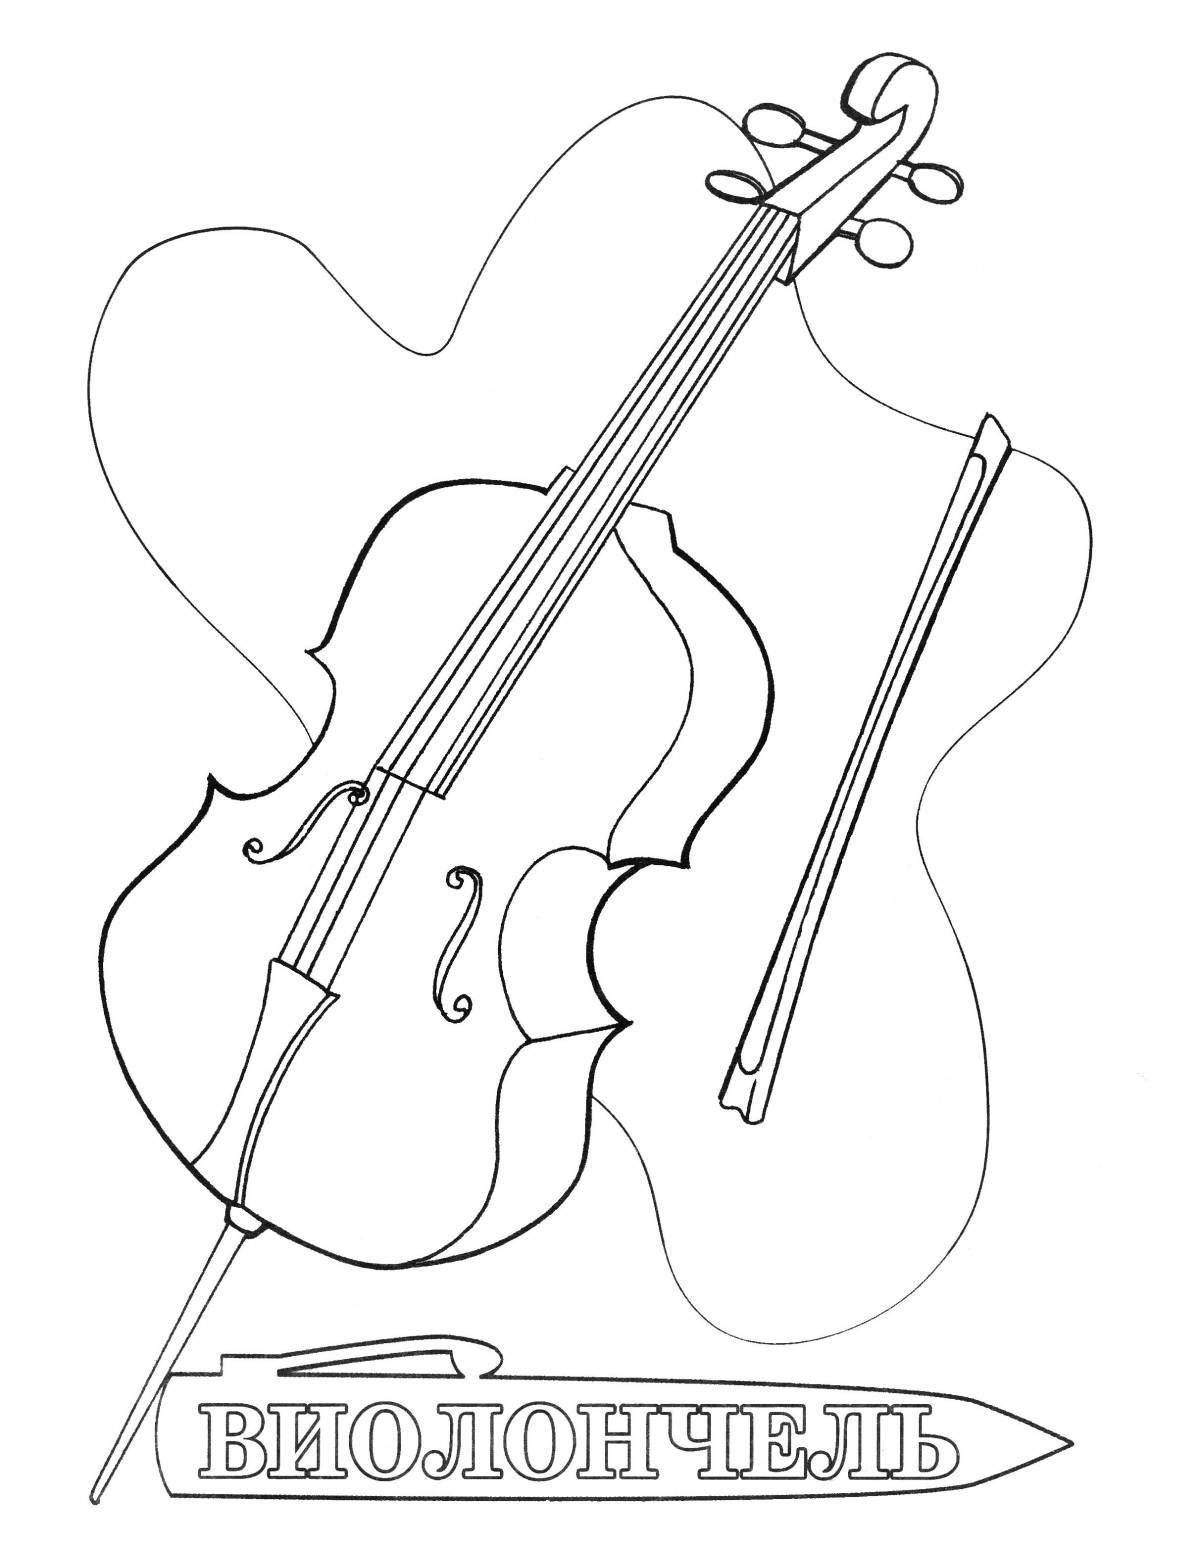 Attractive cello coloring book